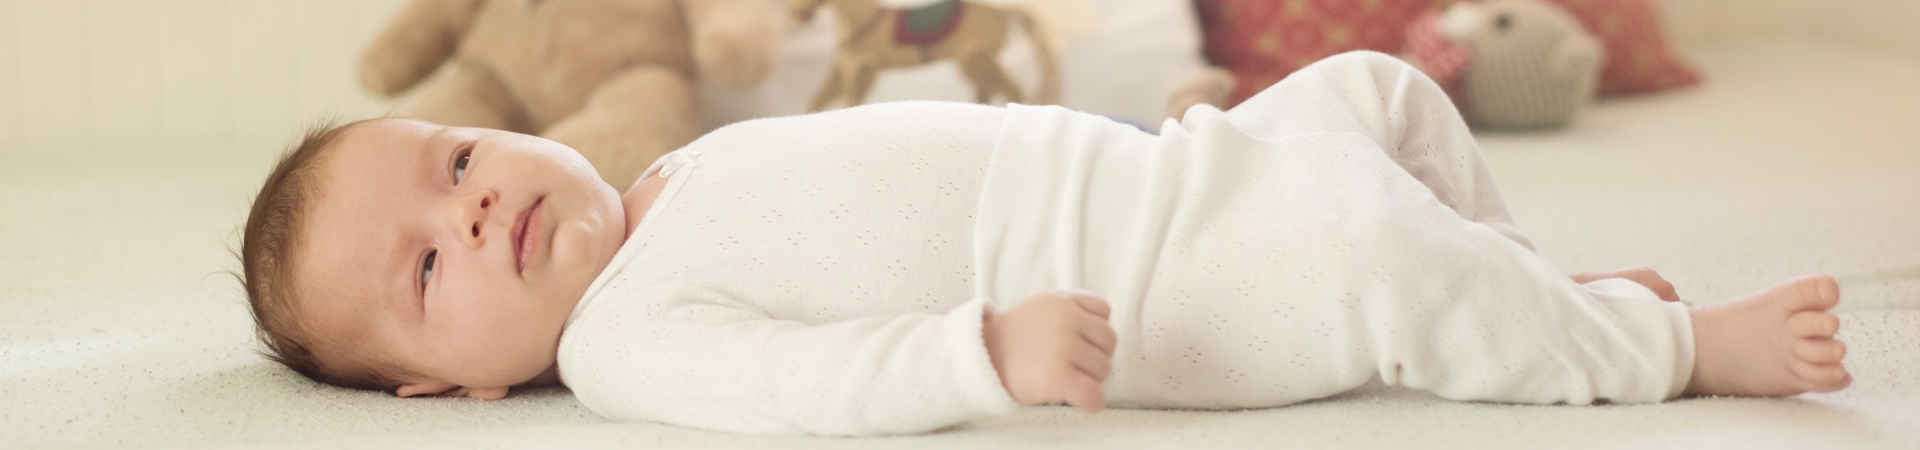 Bebeklerde Uyku Problemi: Erken Uyanan Bebekler